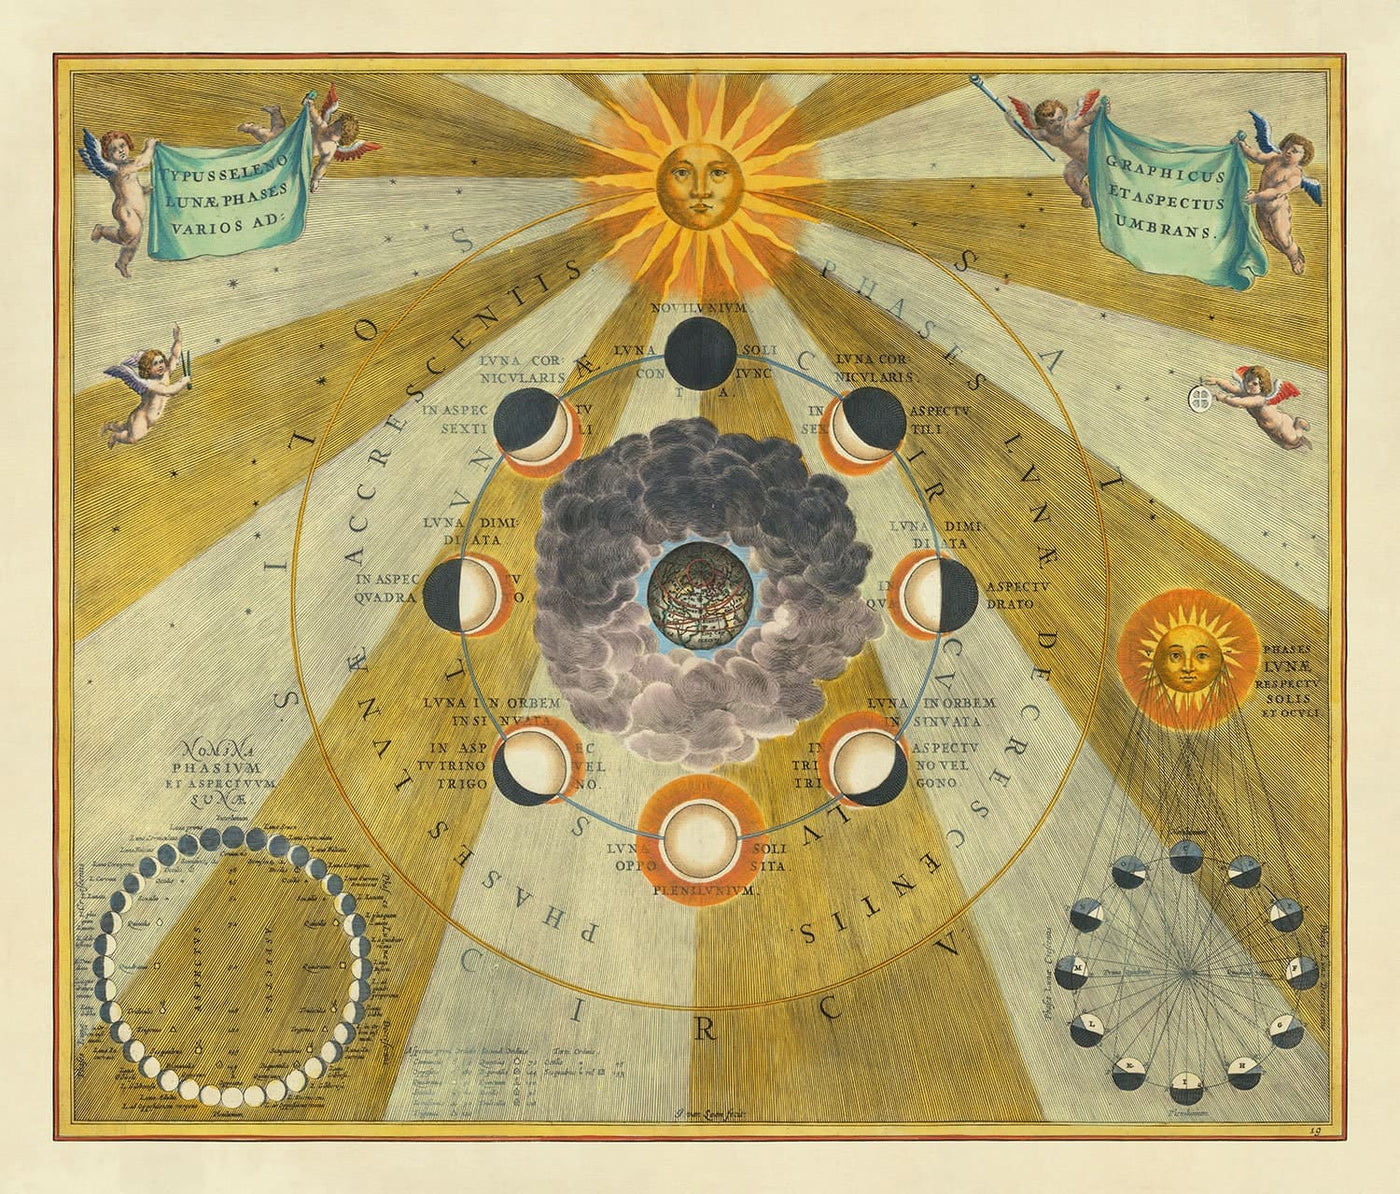 Ancienne carte des phases lunaires, 1661 par Cellarius - Cycles lunaires, premiers enseignements sur le mouvement planétaire